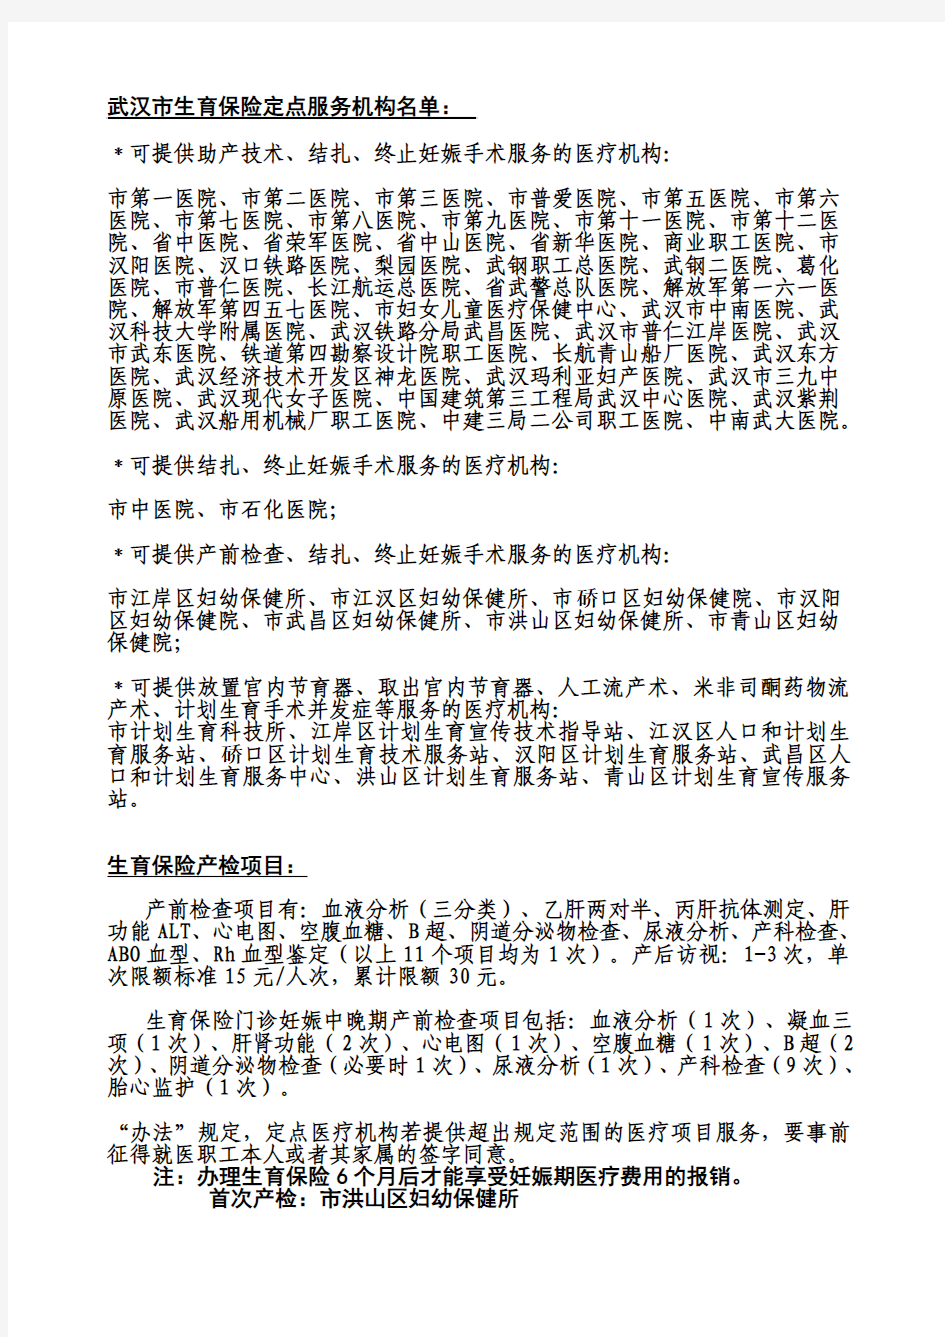 武汉市生育保险定点服务机构名单：